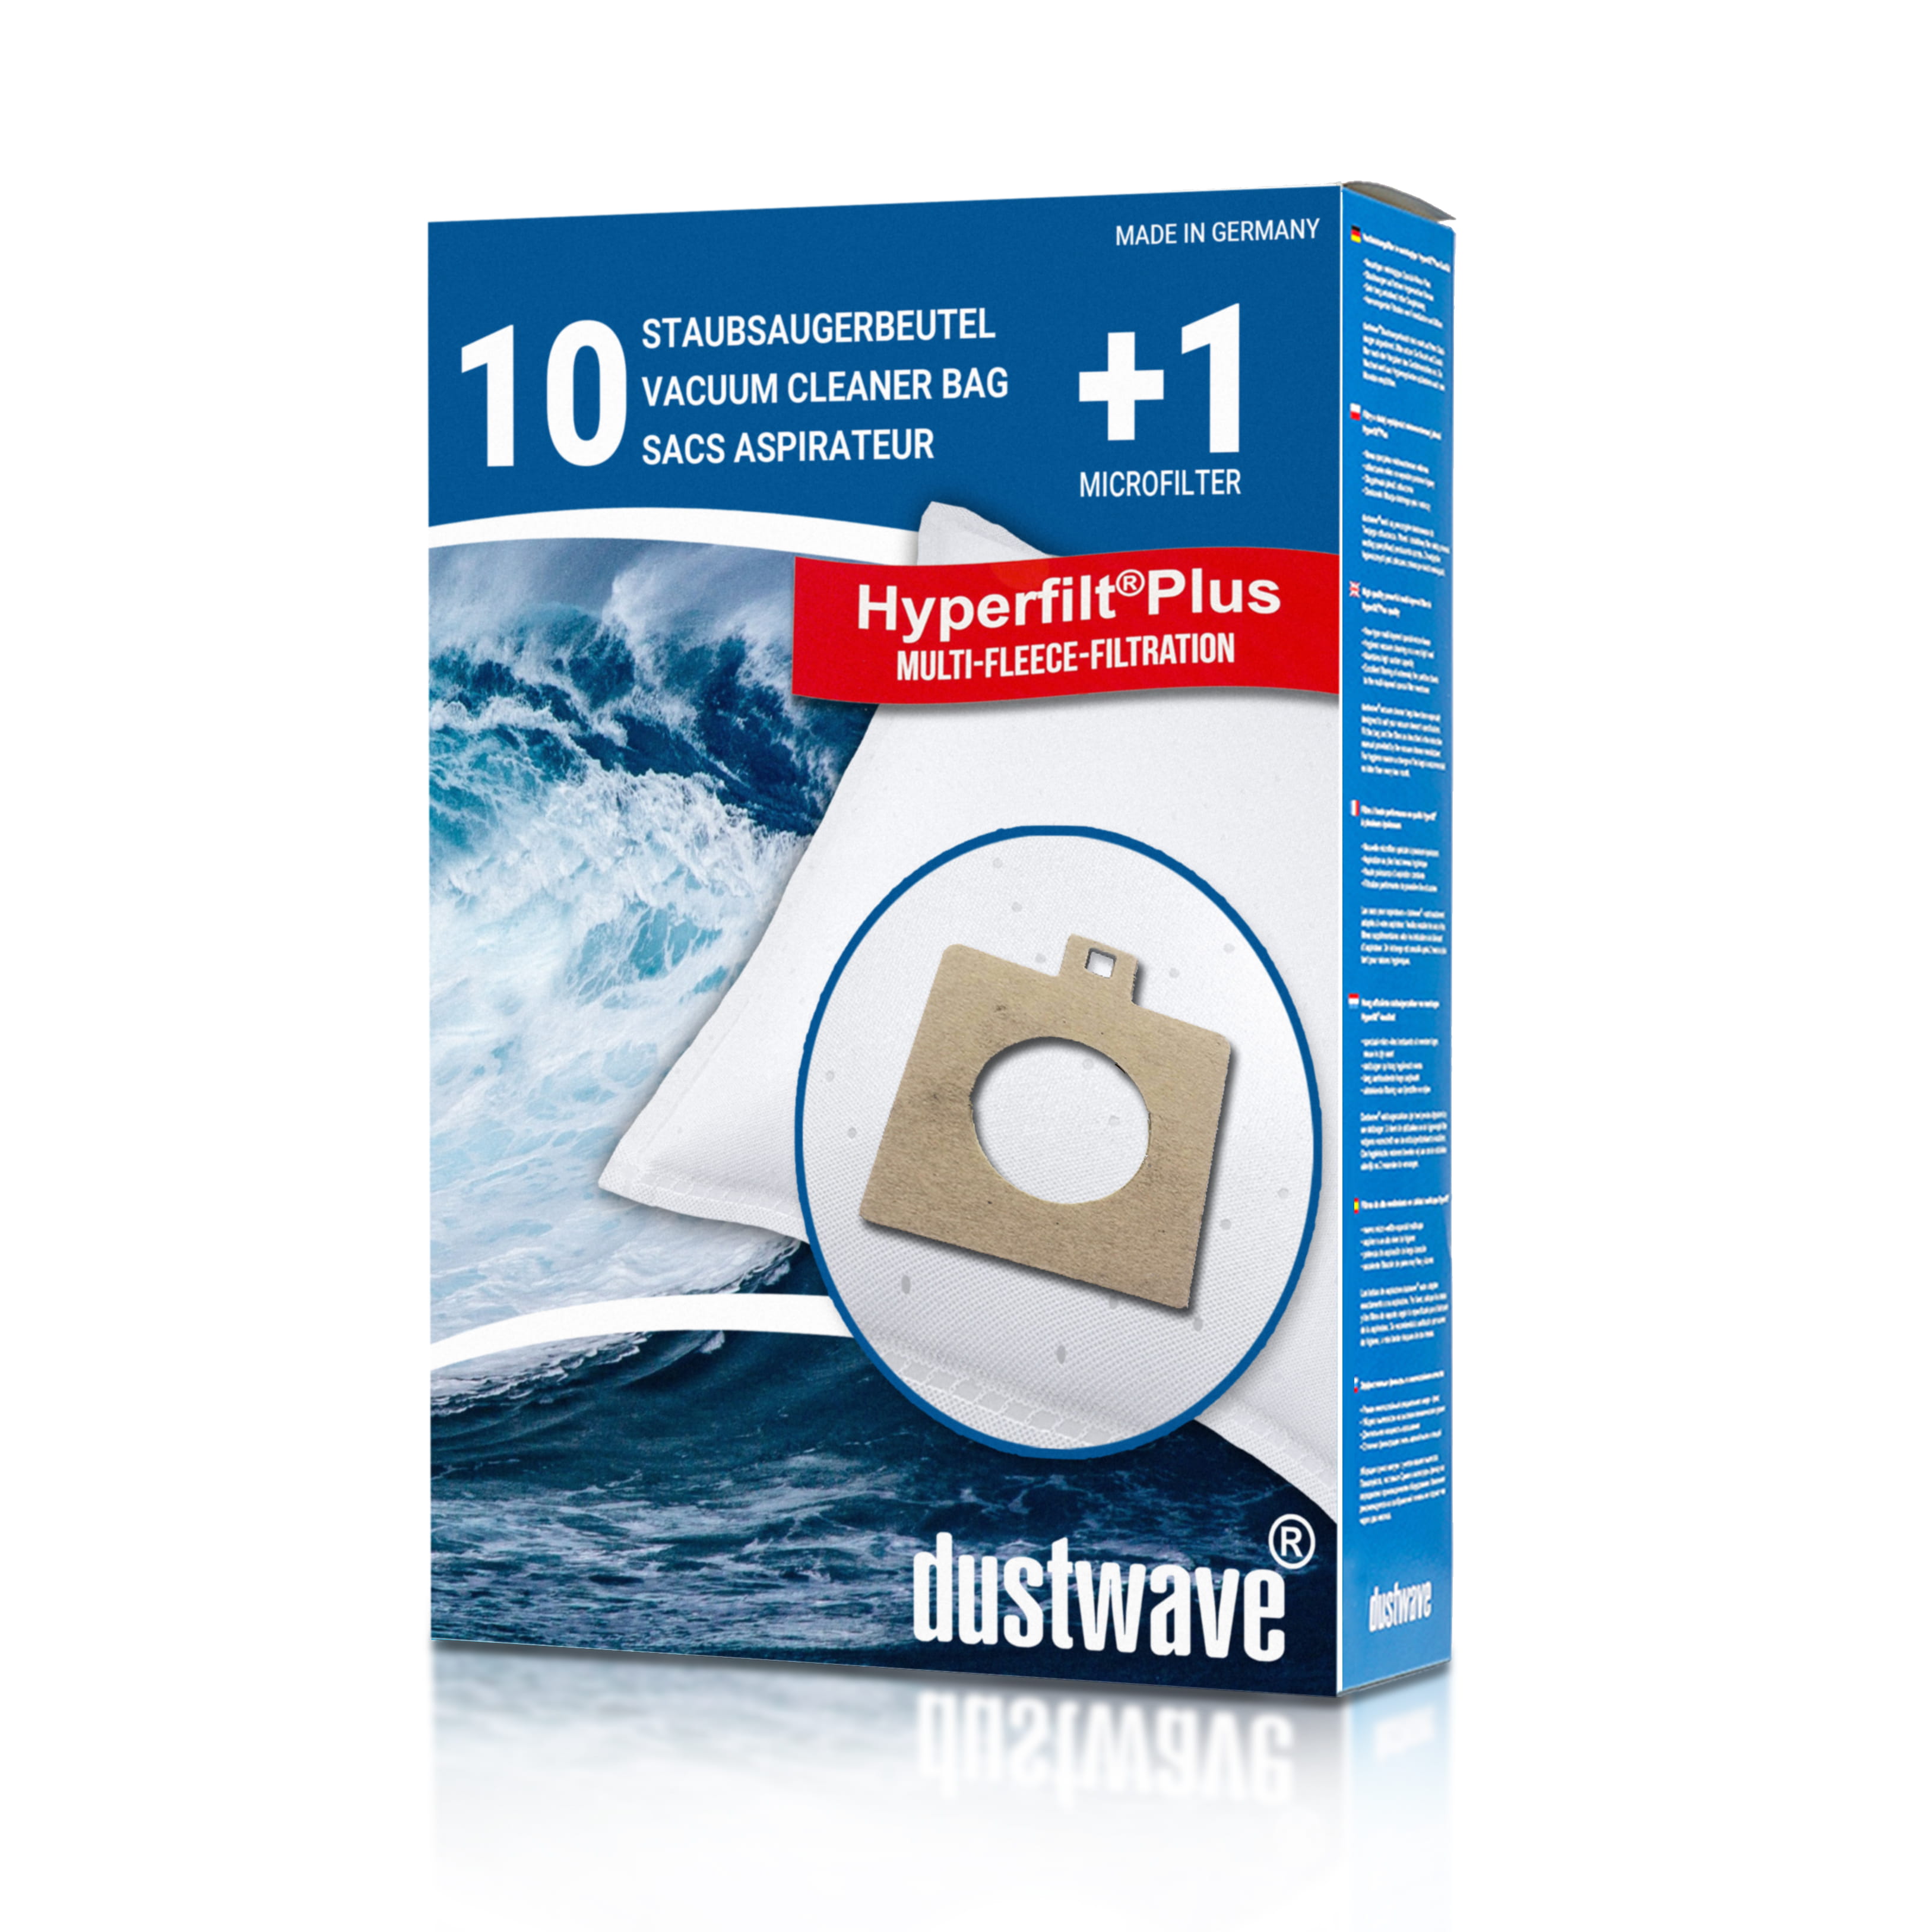 Dustwave® 10 Staubsaugerbeutel für AEG Smart 486 - hocheffizient mit Hygieneverschluss - Made in Germany